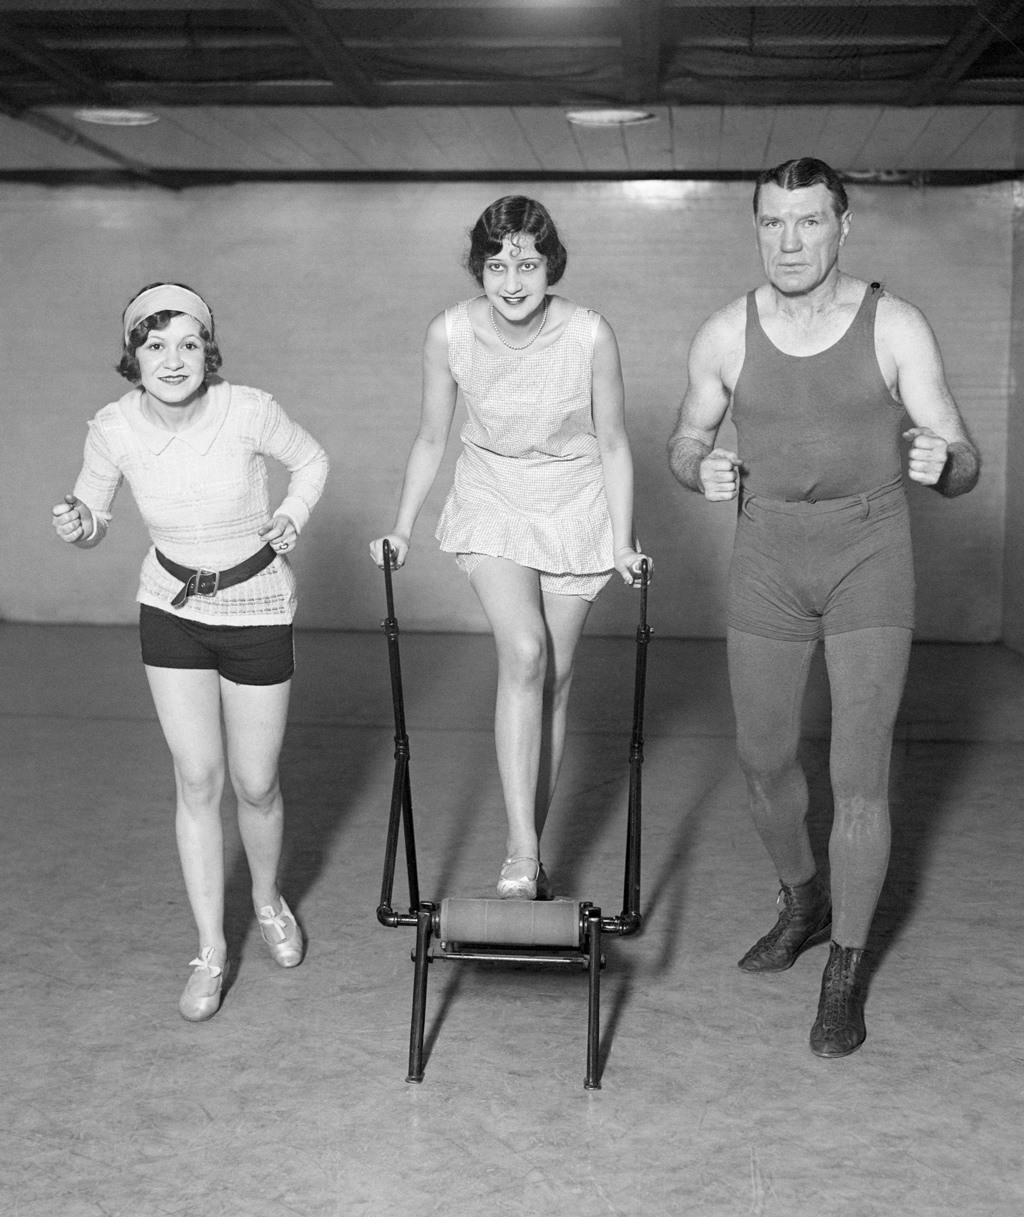 ممارسة الركض على آلة مشي ثابتة من طرف امرأة في عام 1928. صورة: Bettmann/Getty Images